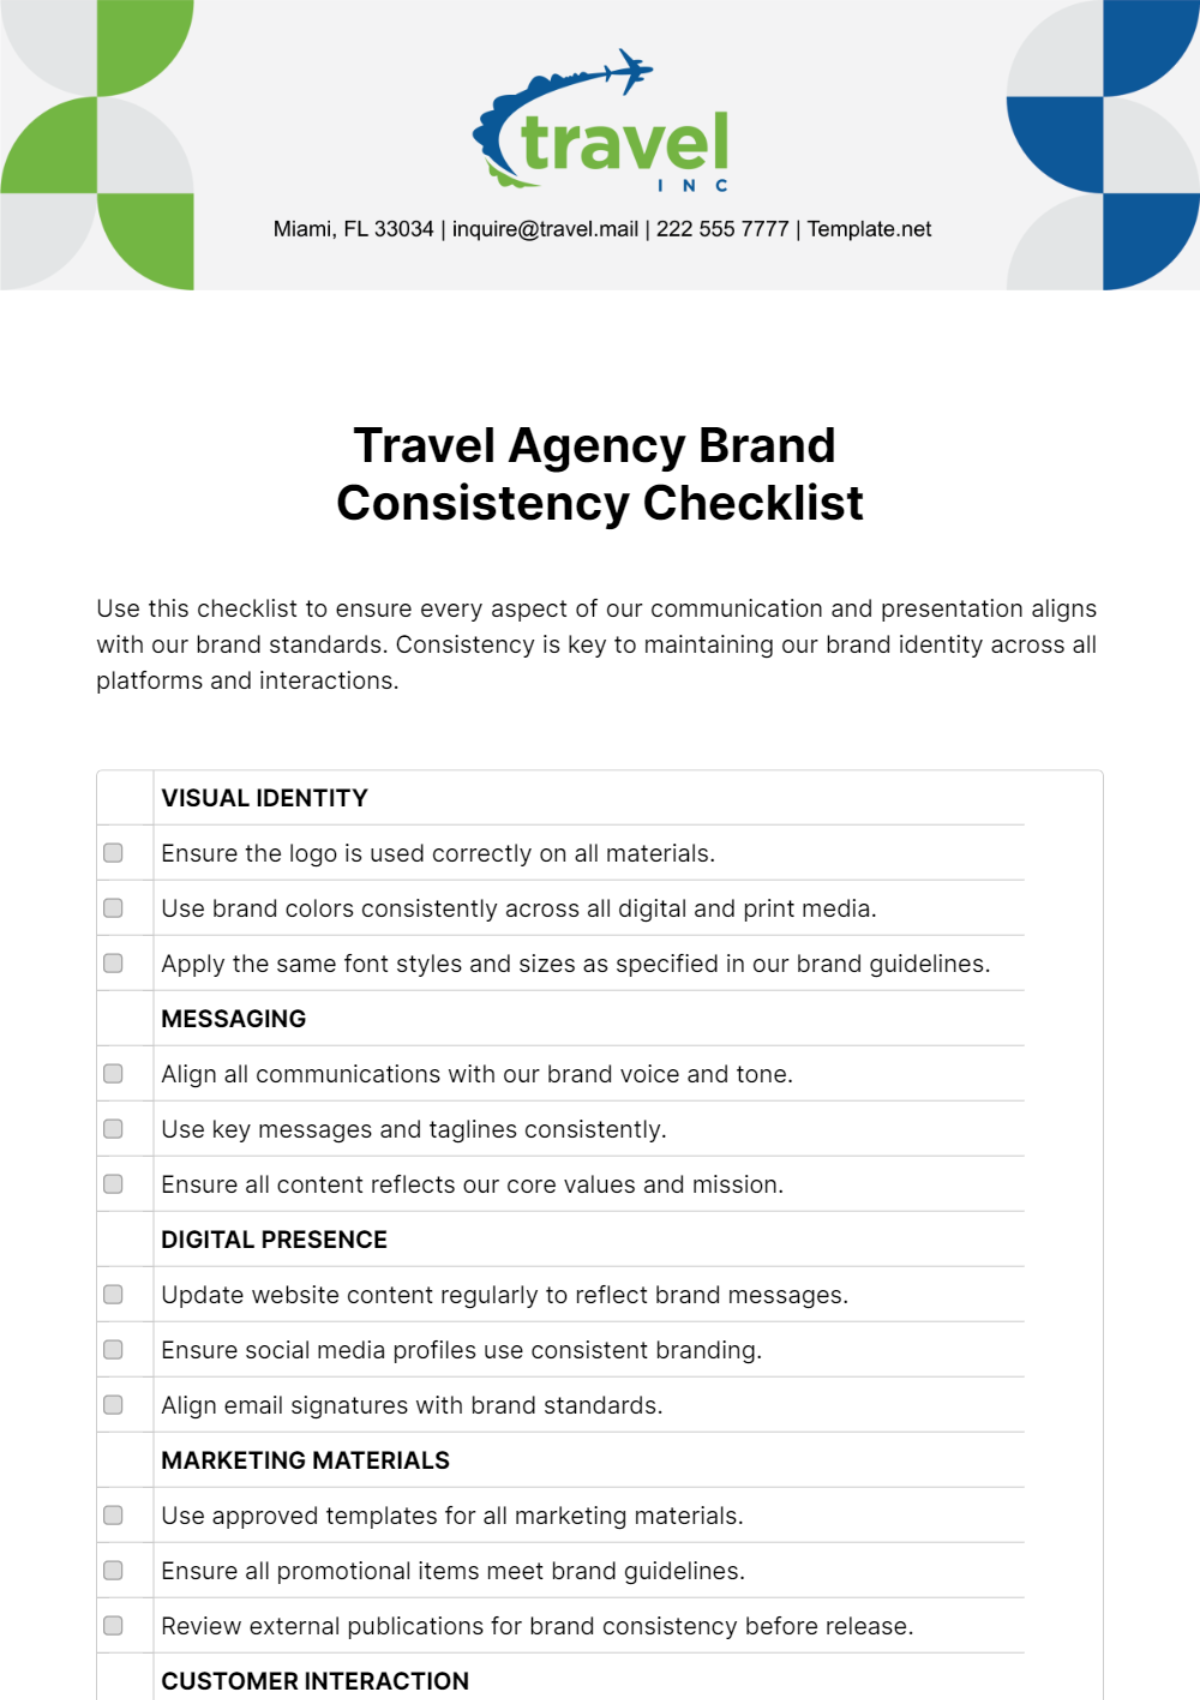 Travel Agency Brand Consistency Checklist Template